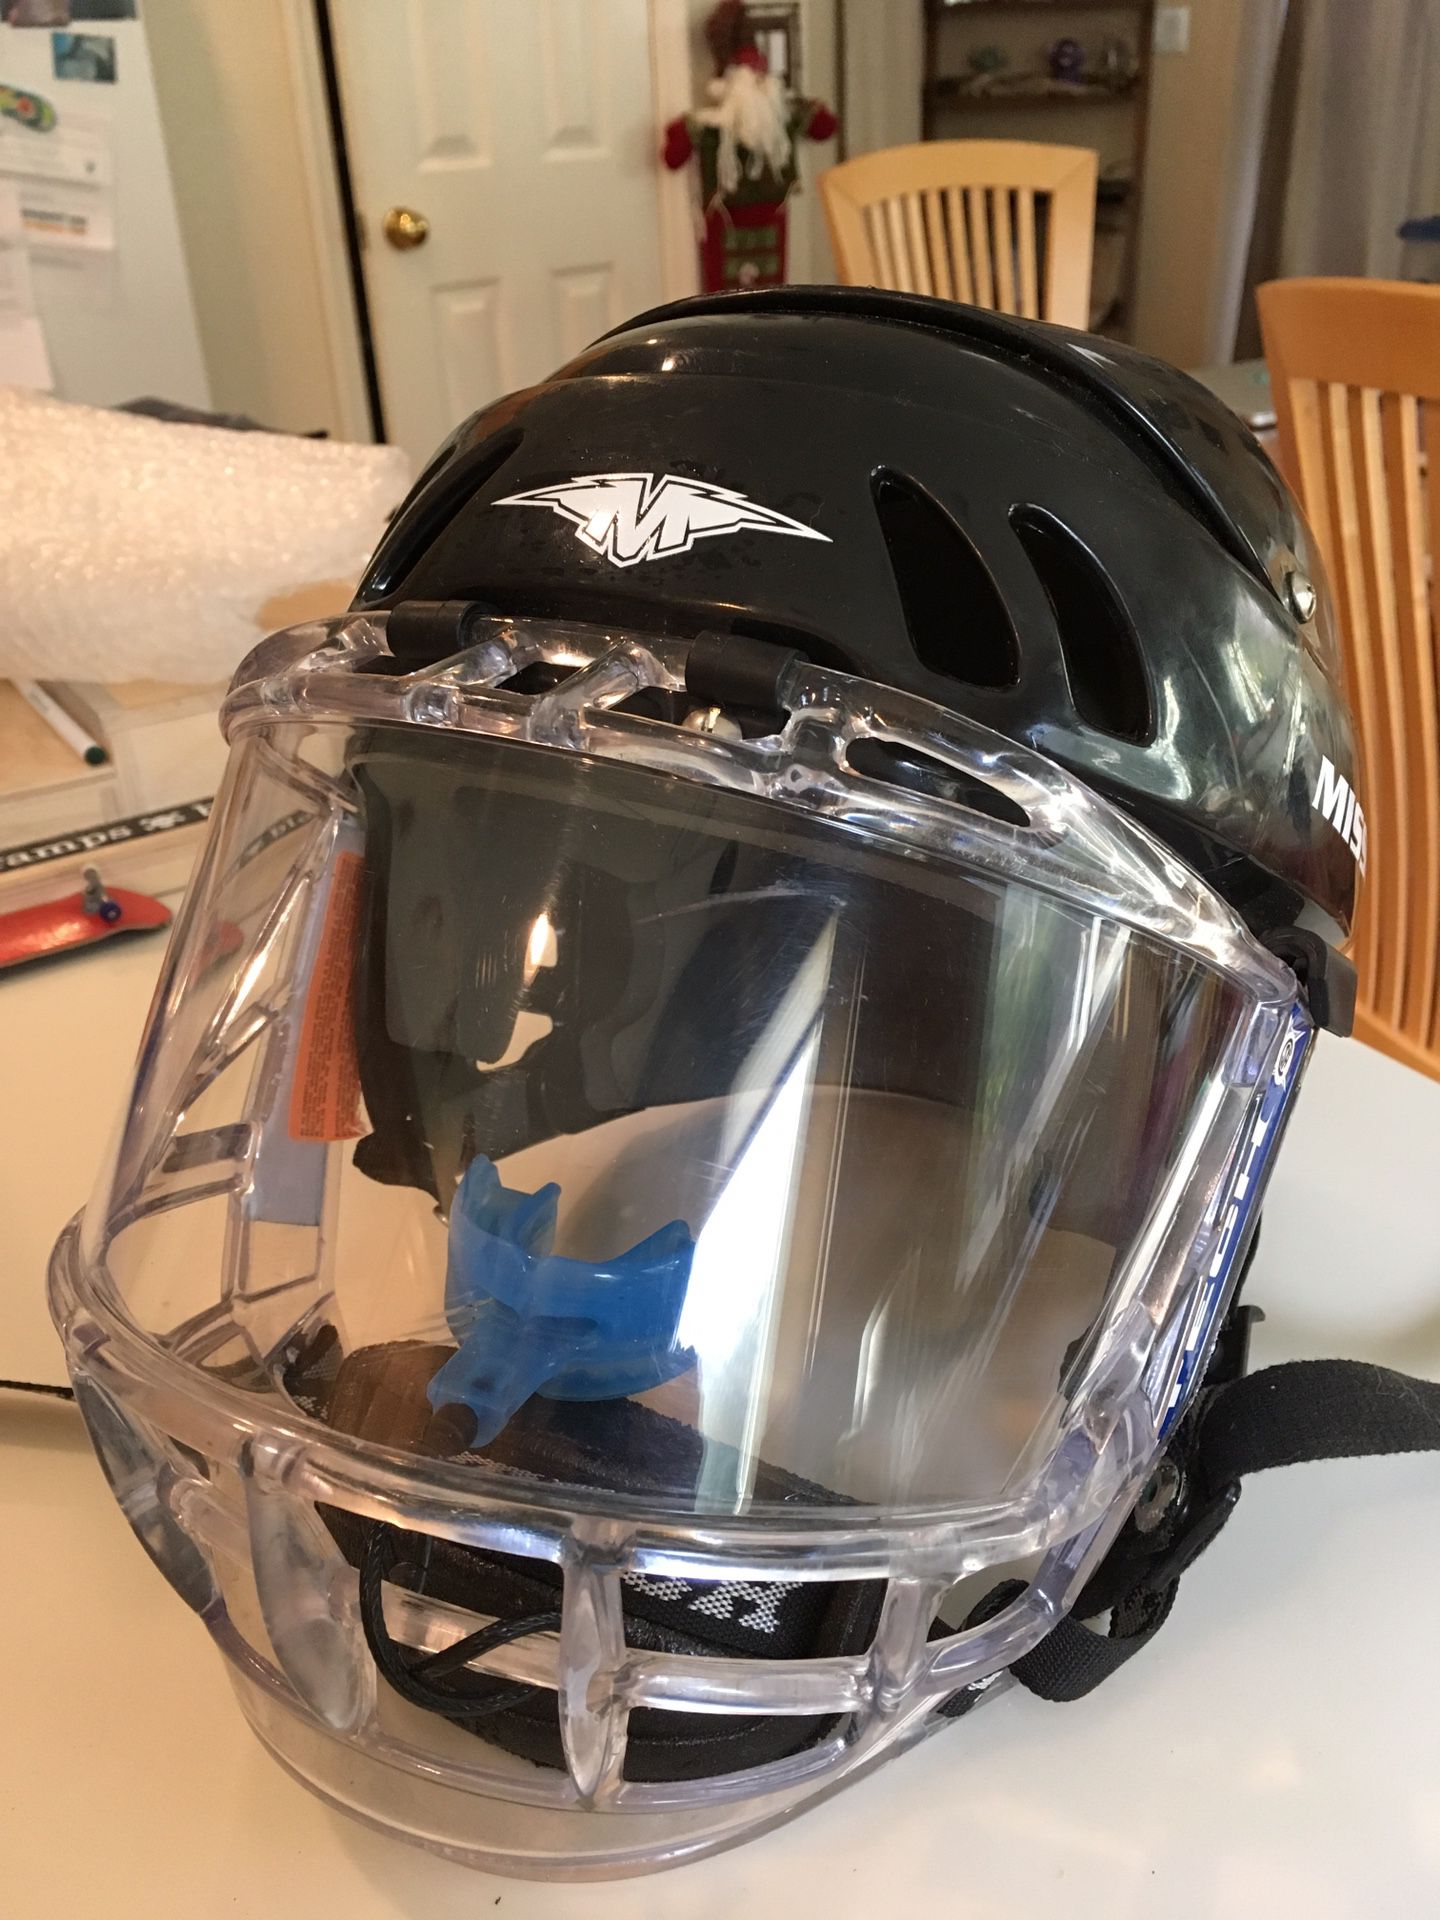 Youth Hockey helmet with shield